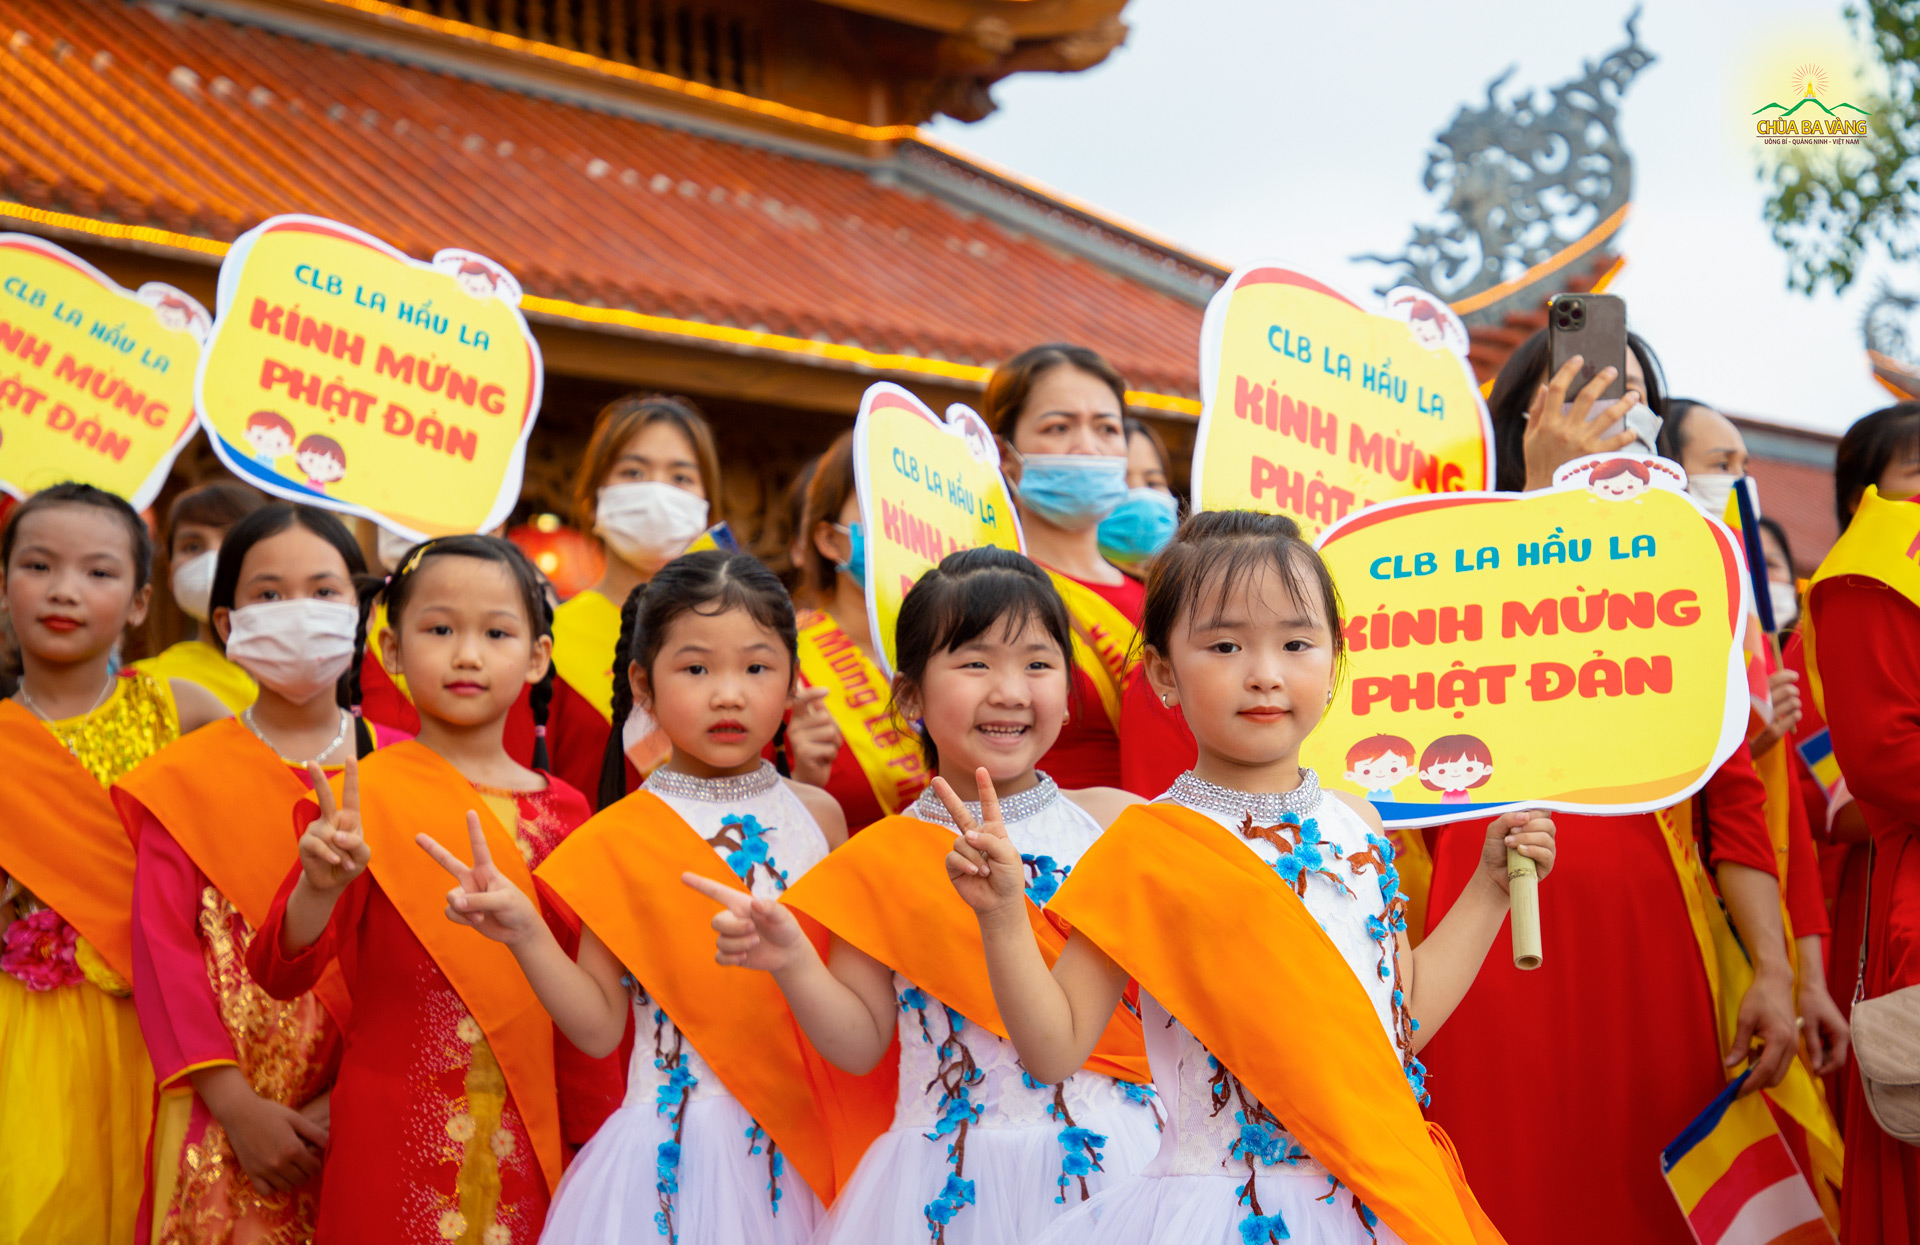 Các bé CLB La Hầu La cùng nhau đón mừng tinh thần Phật đản muôn năm 